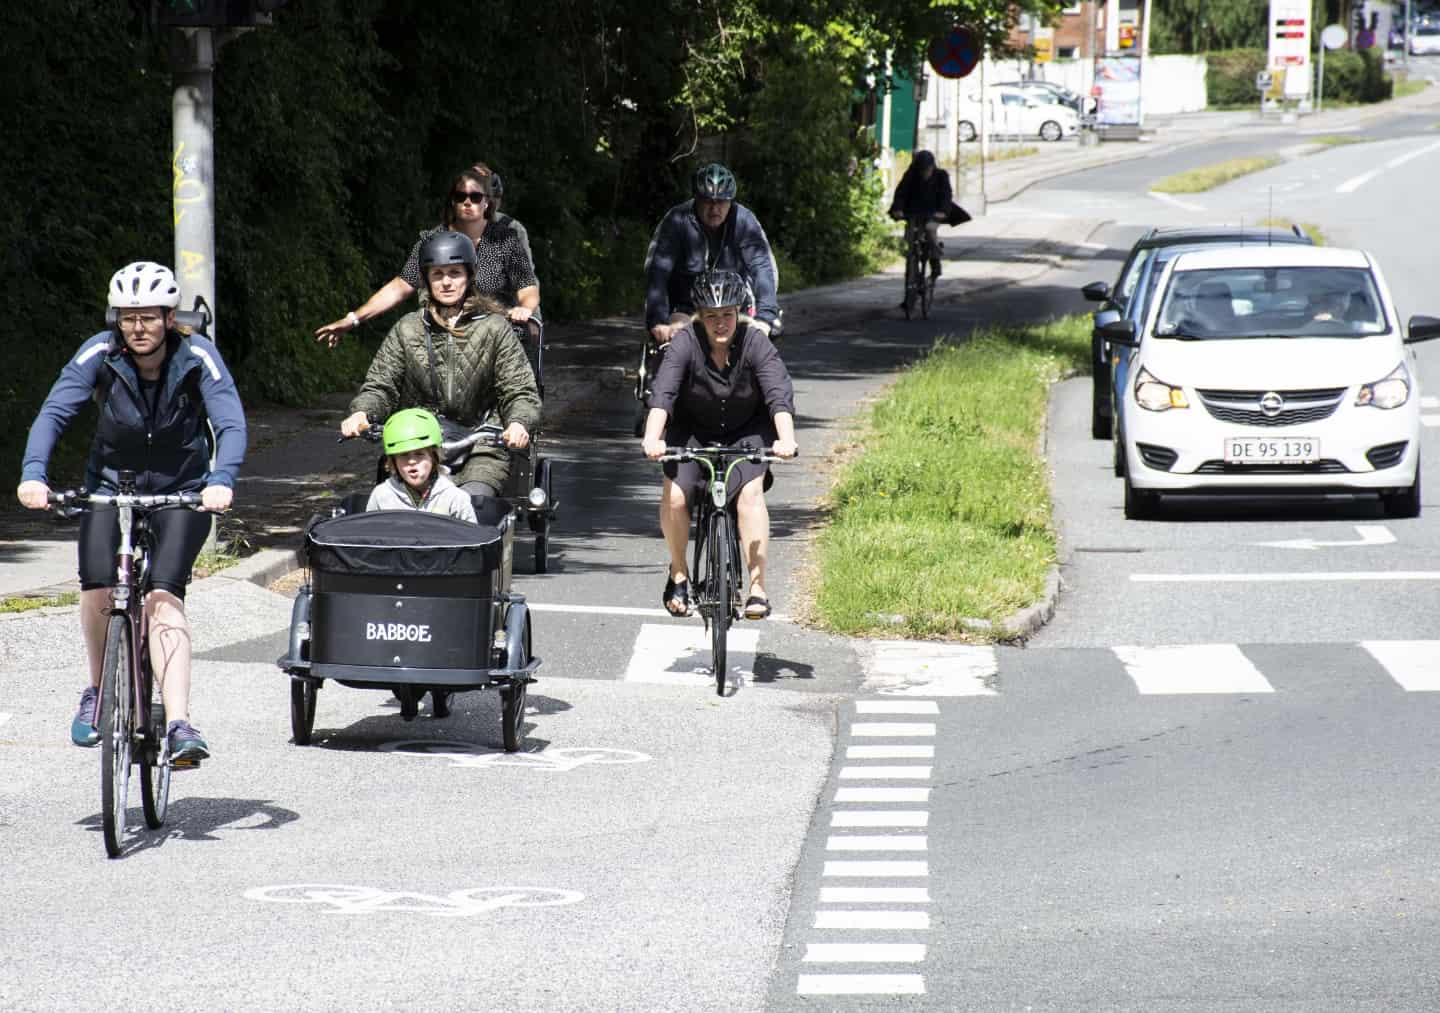 Overskrift Peru foragte Her de 10 farligste steder at cykle i Aarhus - og sådan sker ulykkerne |  stiften.dk